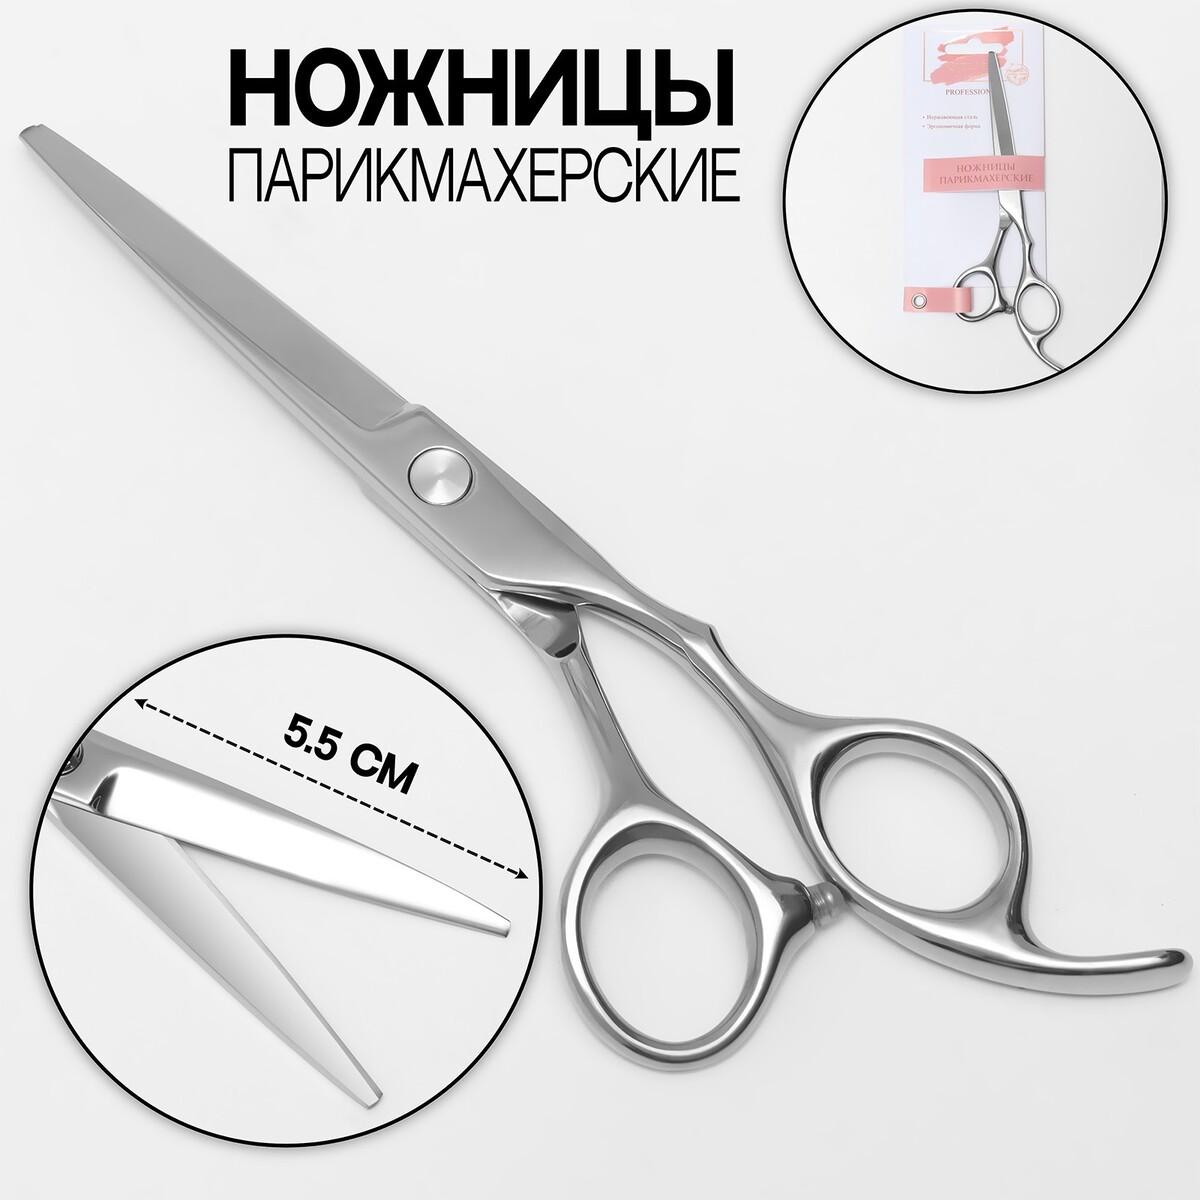 Ножницы парикмахерские с упором, загнутые кольца, лезвие — 5,5 см, цвет серебристый ножницы хозяйственные gefu металлические